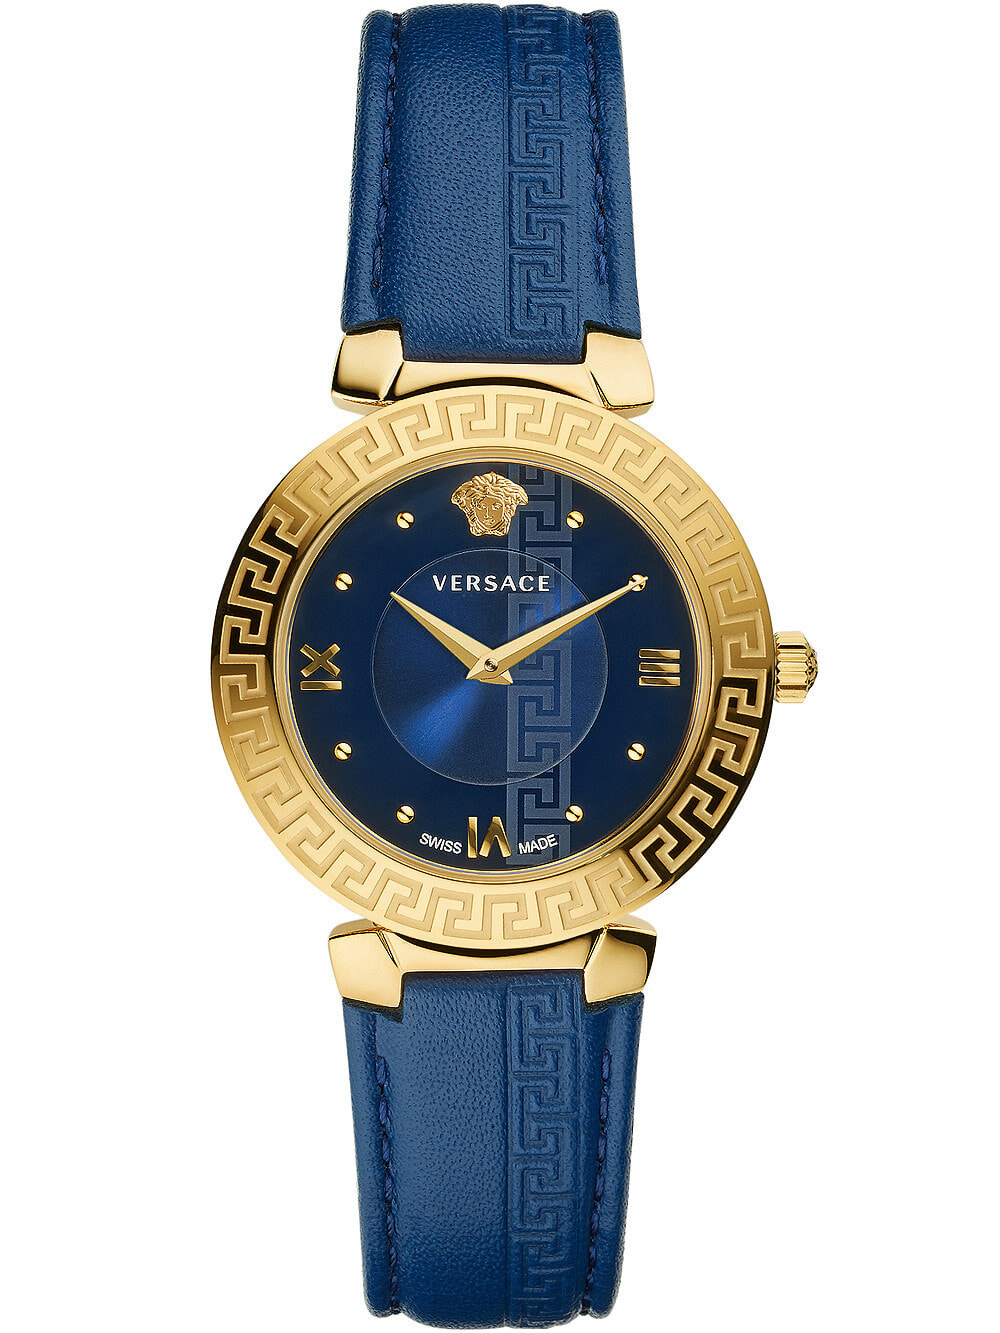 Женские наручные кварцевые часы  Versace Безель украшен меандровым орнаментом. На задней крышке имеется фирменный знак Versace. Кожаный ремешок с раскладывающейся застежкой.  Водозащита 30WR. Стекло сапфировое.